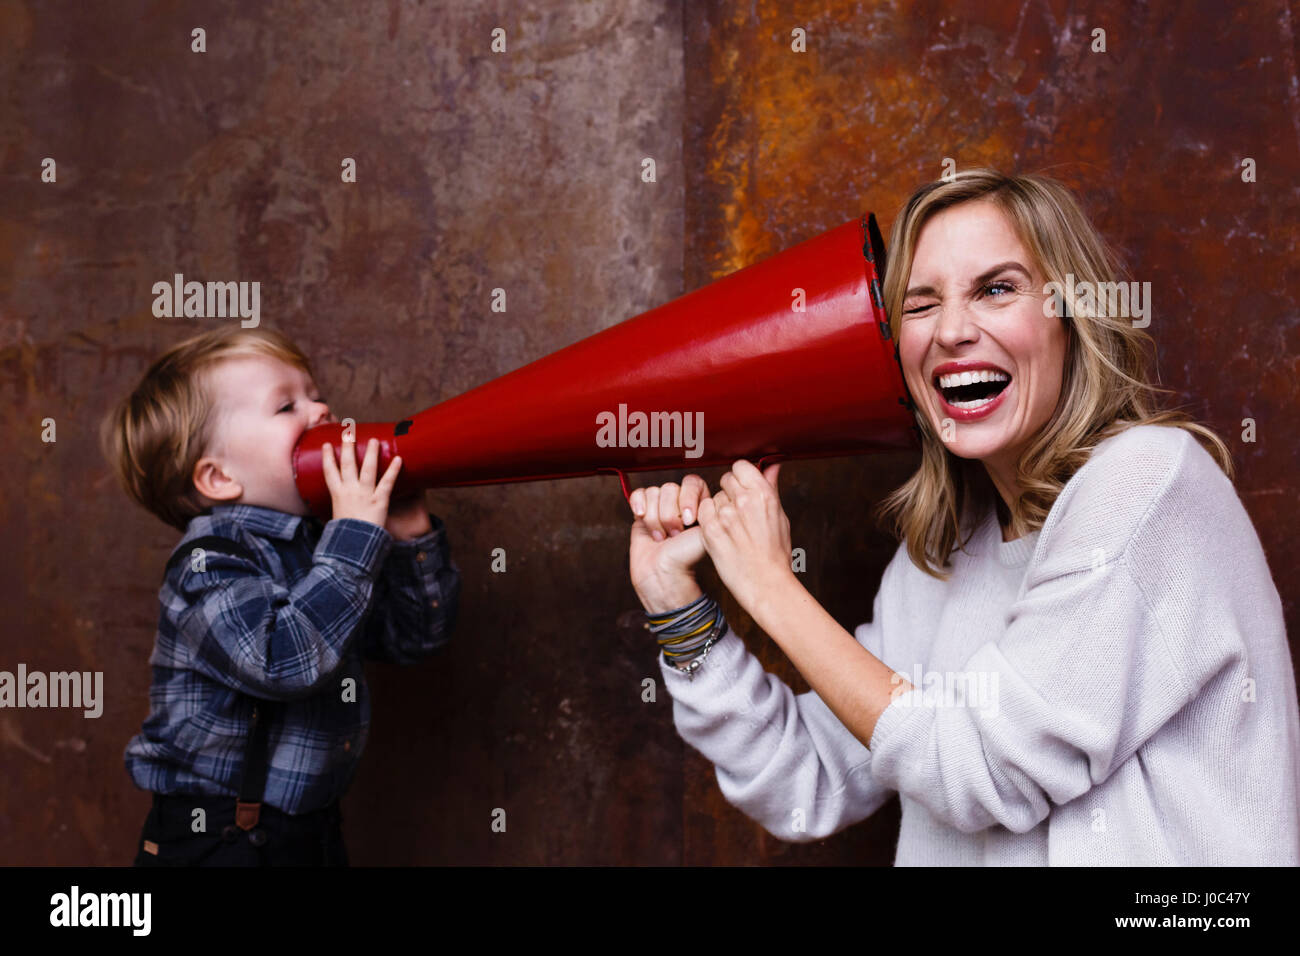 Jeune garçon à parler dans un mégaphone, woman holding megaphone à son oreille Banque D'Images